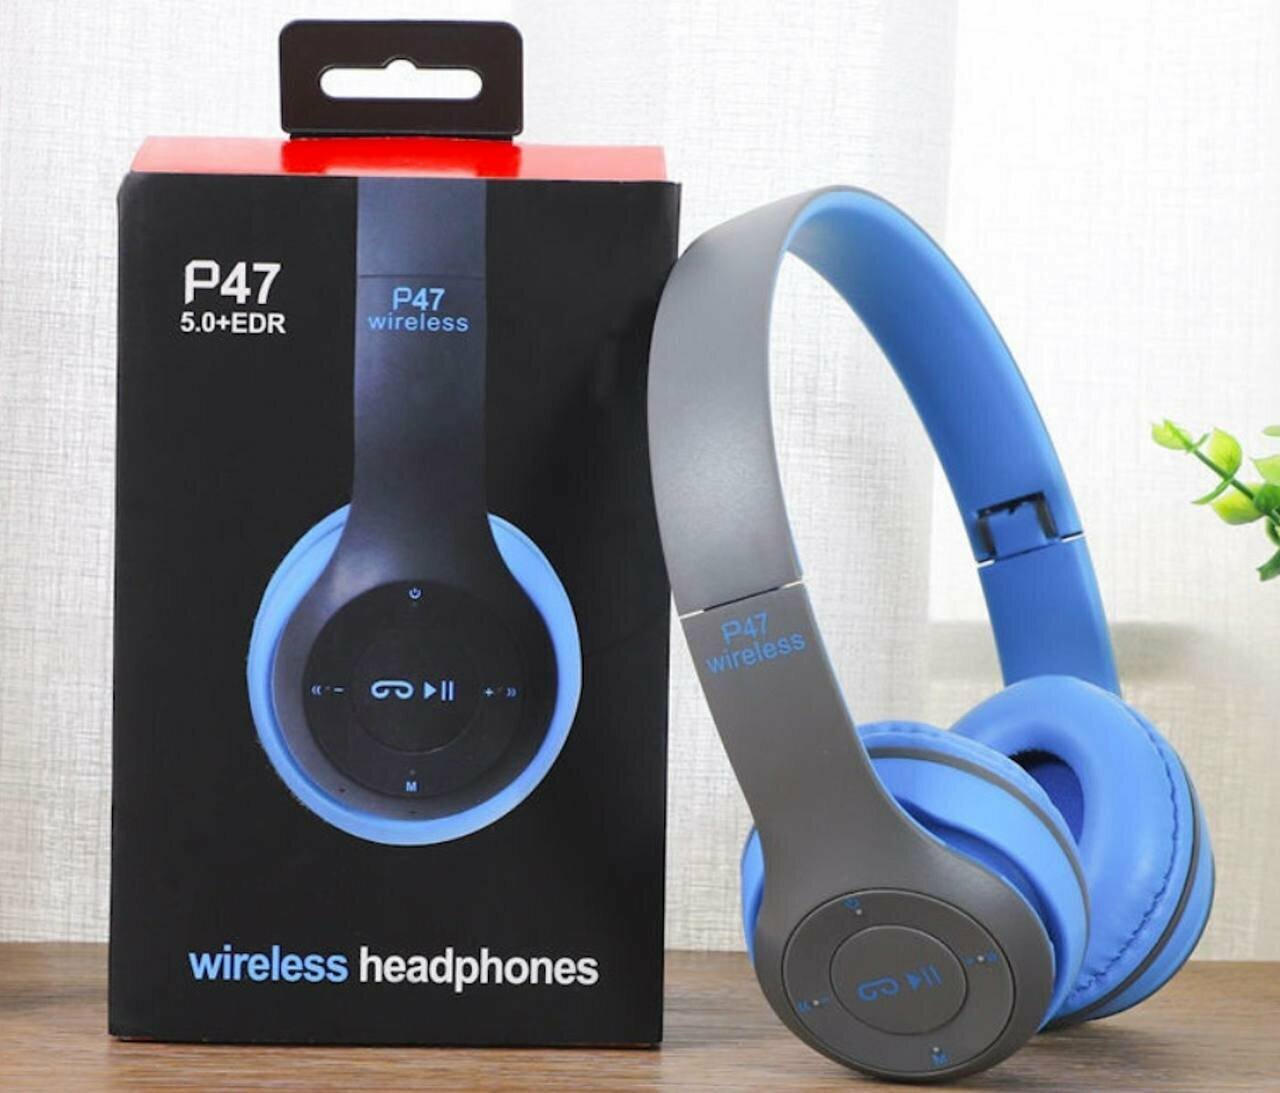 Беспроводные наушники P47 Bluetooth 5.0 EDR Wireless с микрофоном, FM-радио, с поддержкой SD-карты памяти (Mp3-плеер) синий